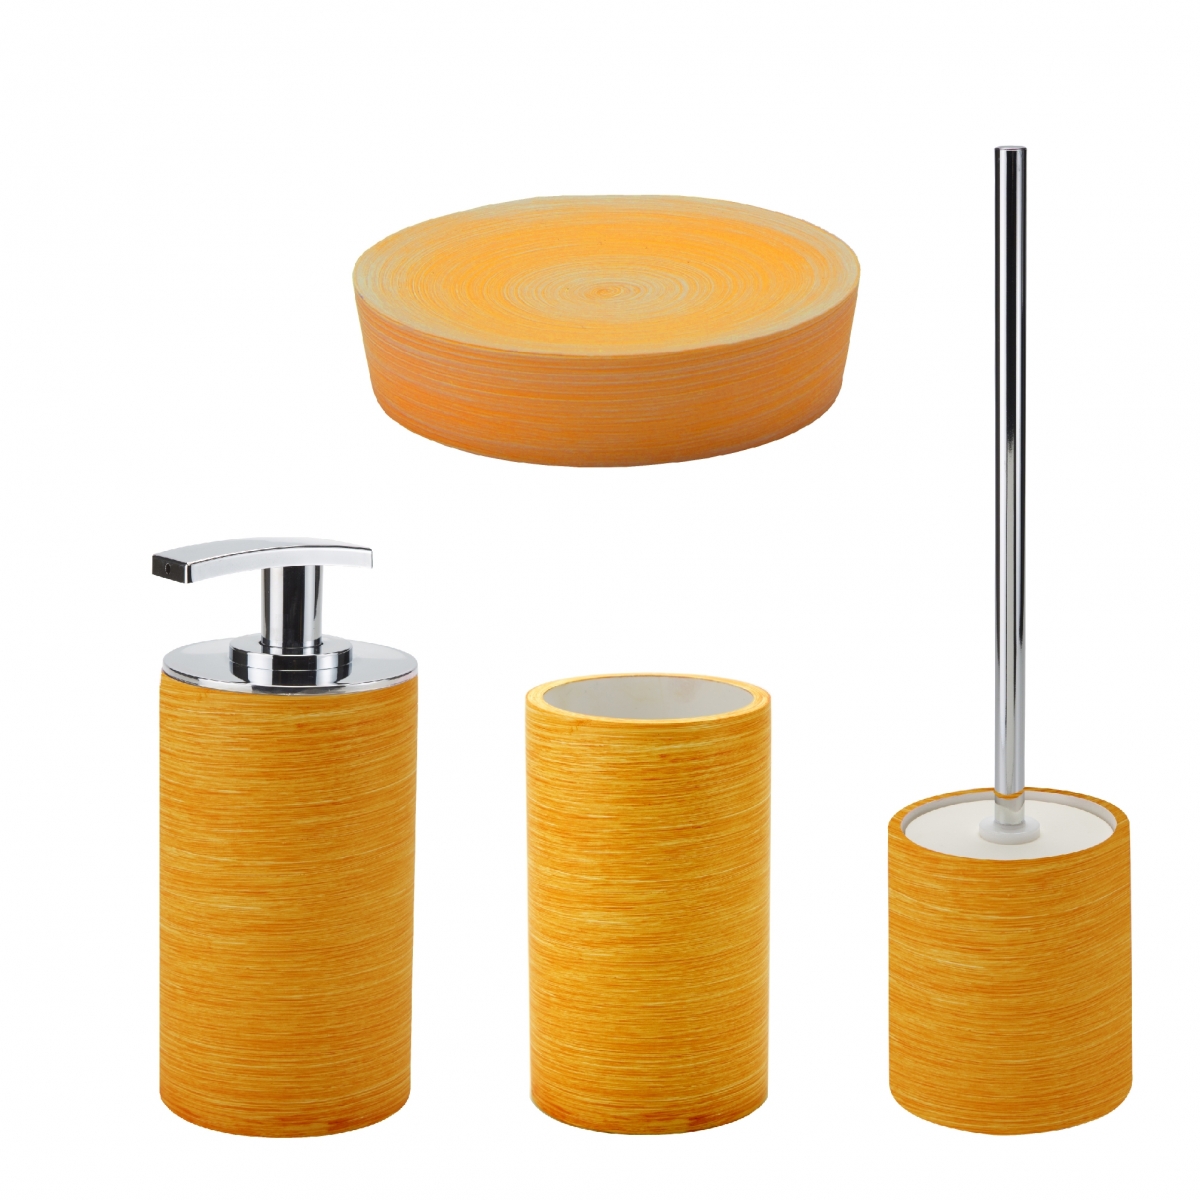 Comprar accesorios para baño Gedy - Sole Set 4 Pz. (Dosificador ,Portacepillos,Jabonera,Escobillero) Naranja